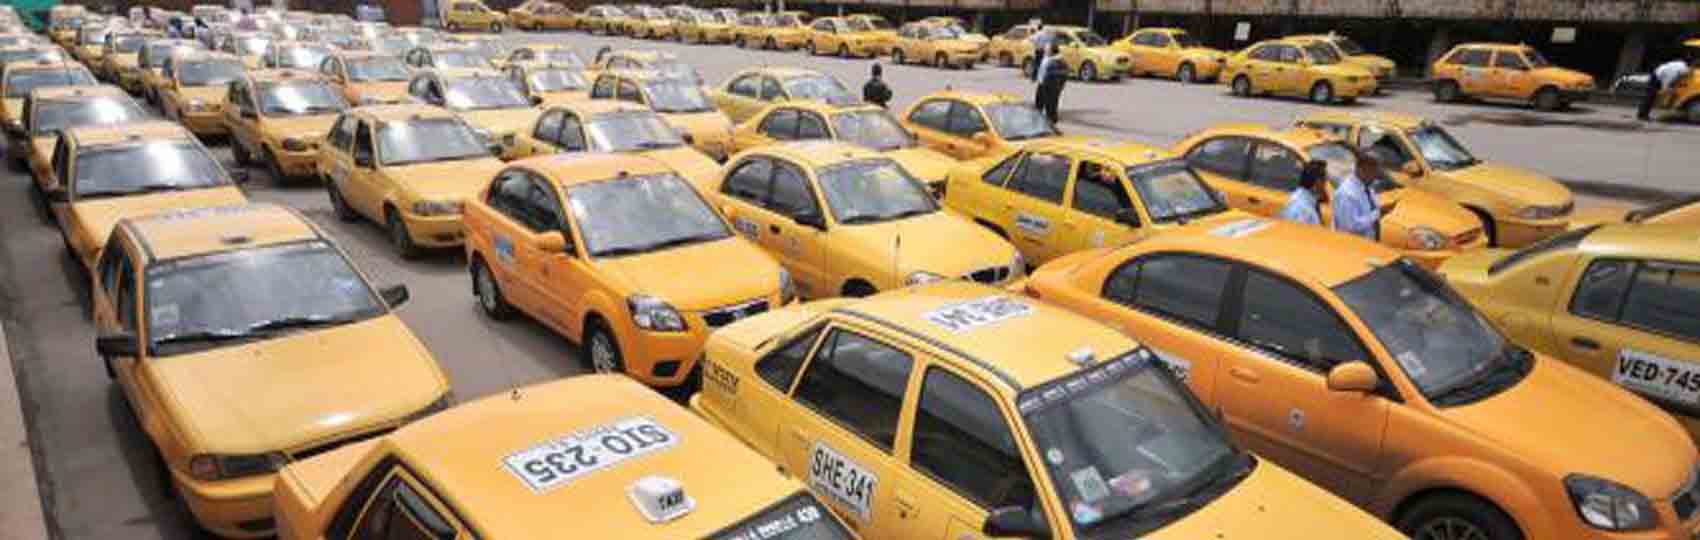 Noticias del sector del taxi y la movilidad en Colombia.  Mantente informado de todas las noticias del taxi de Colombia en el grupo de Facebook de Todo Taxi.